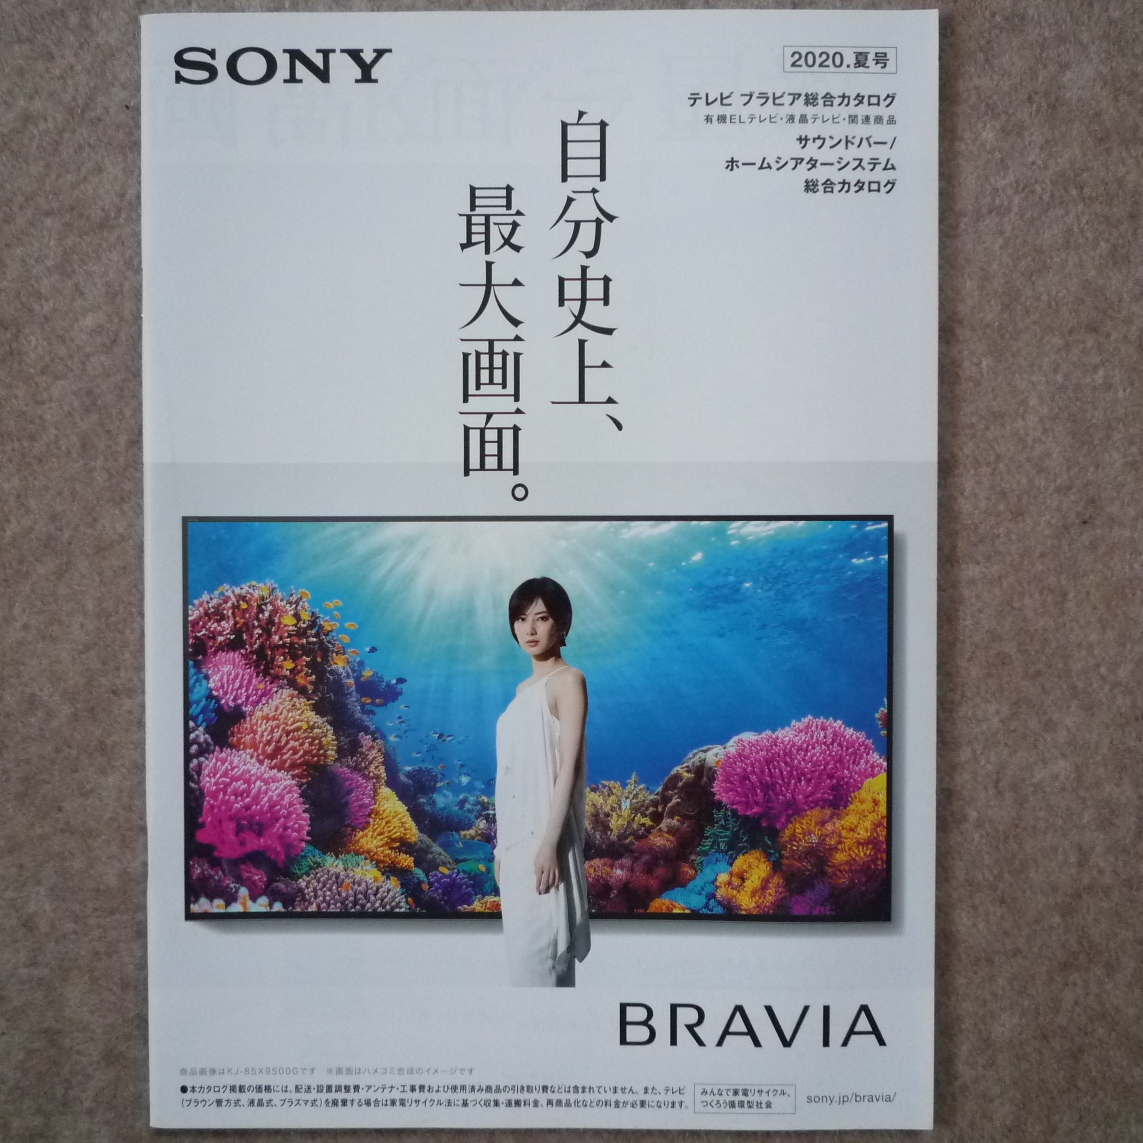  Sony tv catalog sony Bravia BRAVIA 2020 year 6 month 